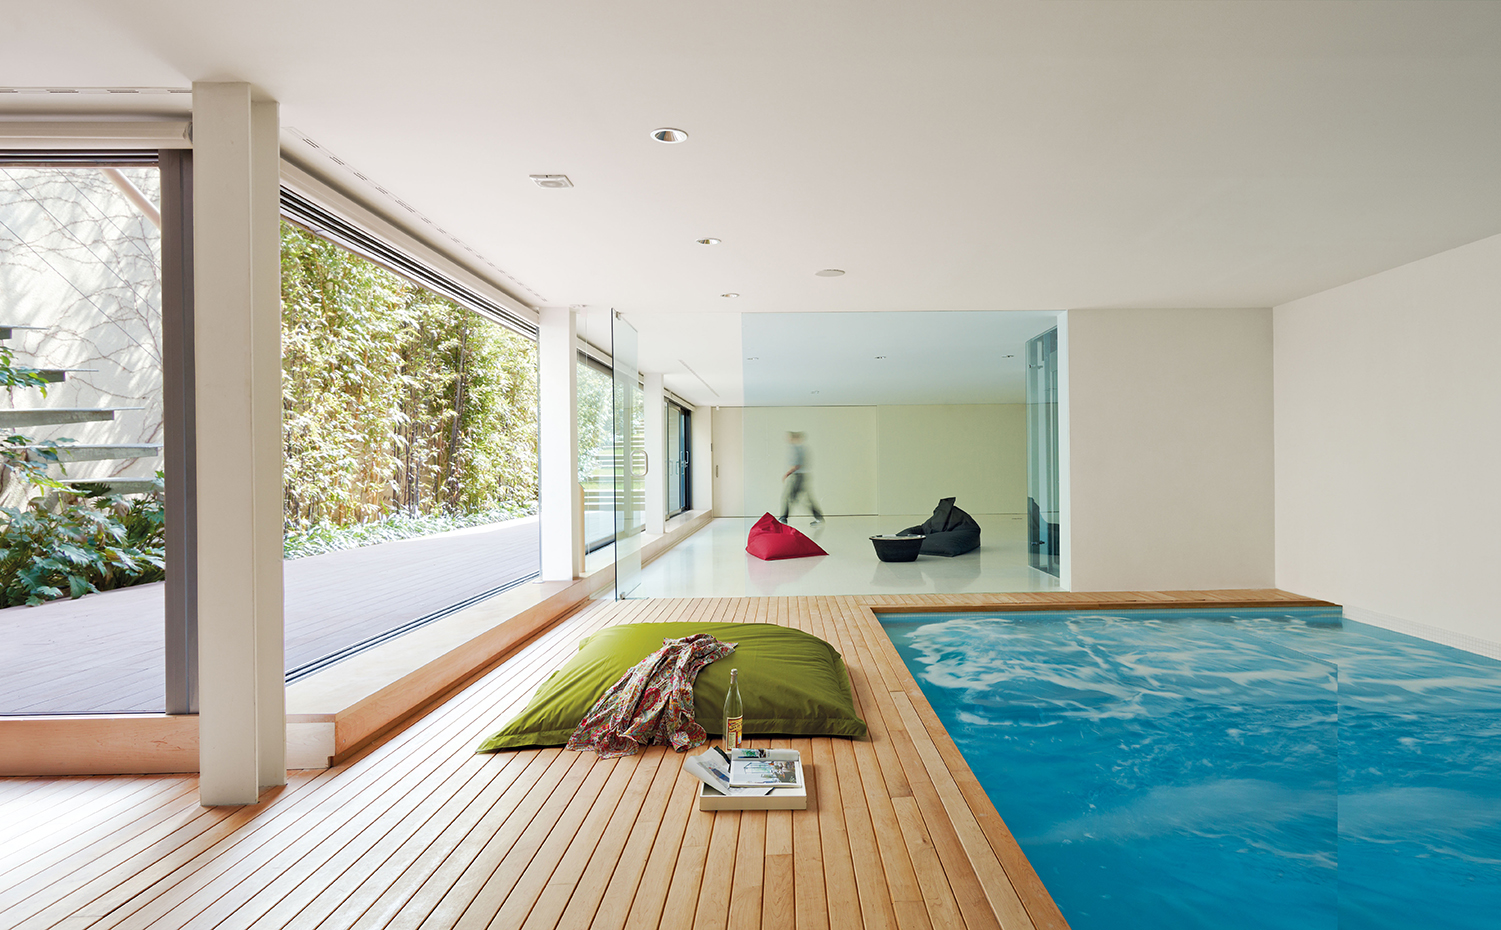 Descubrir 65+ imagen casas modernas con piscina interior